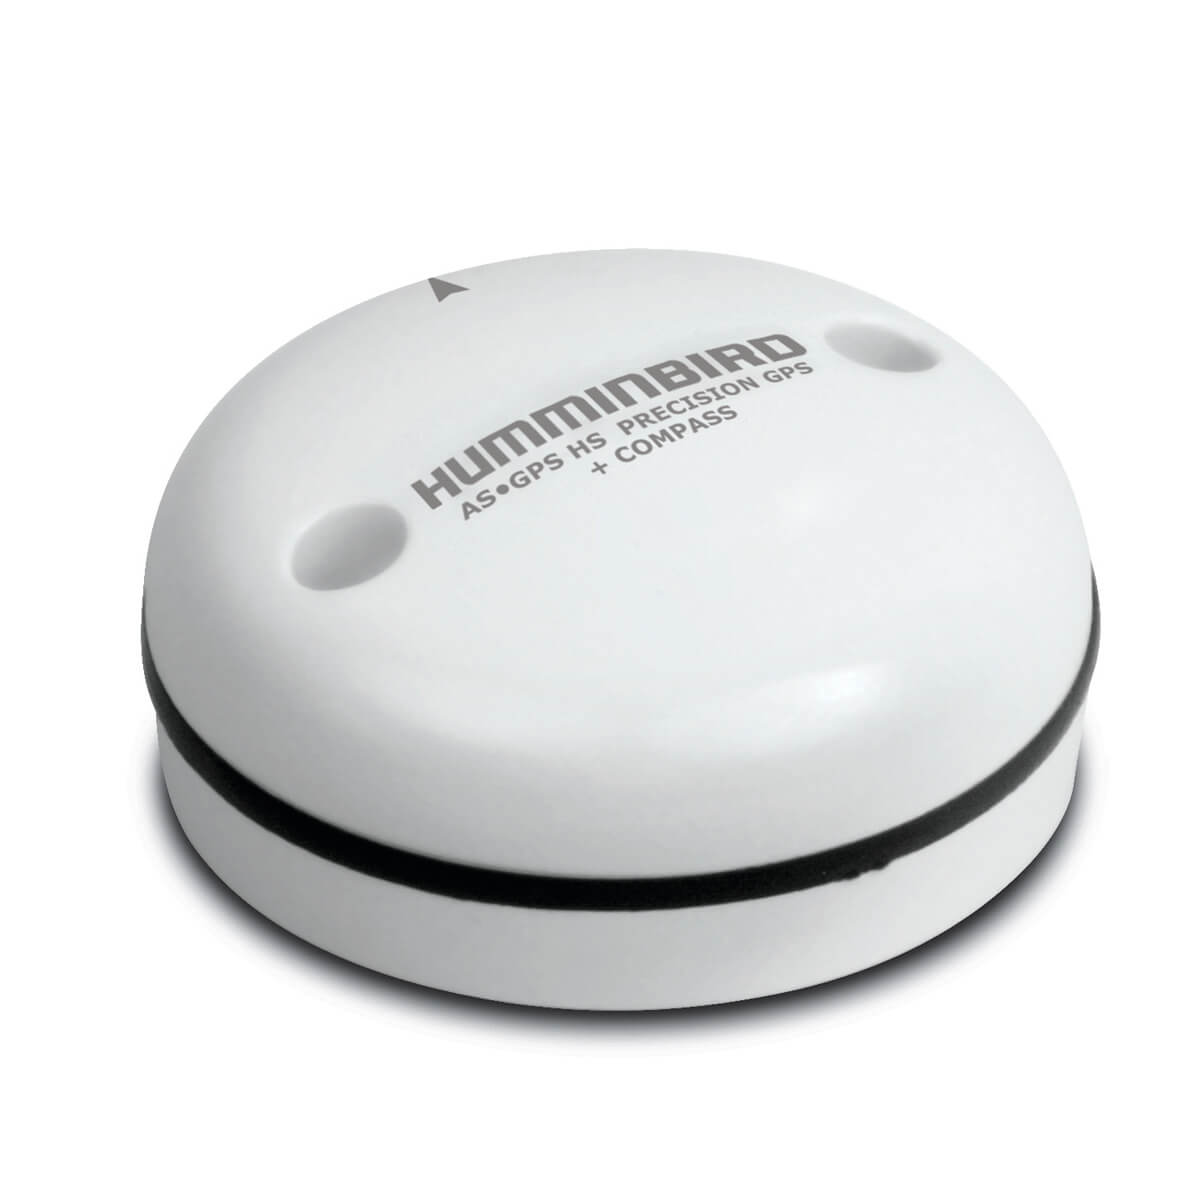 Humminbird AS GPS HS External GPS Receiver with Heading Sensor